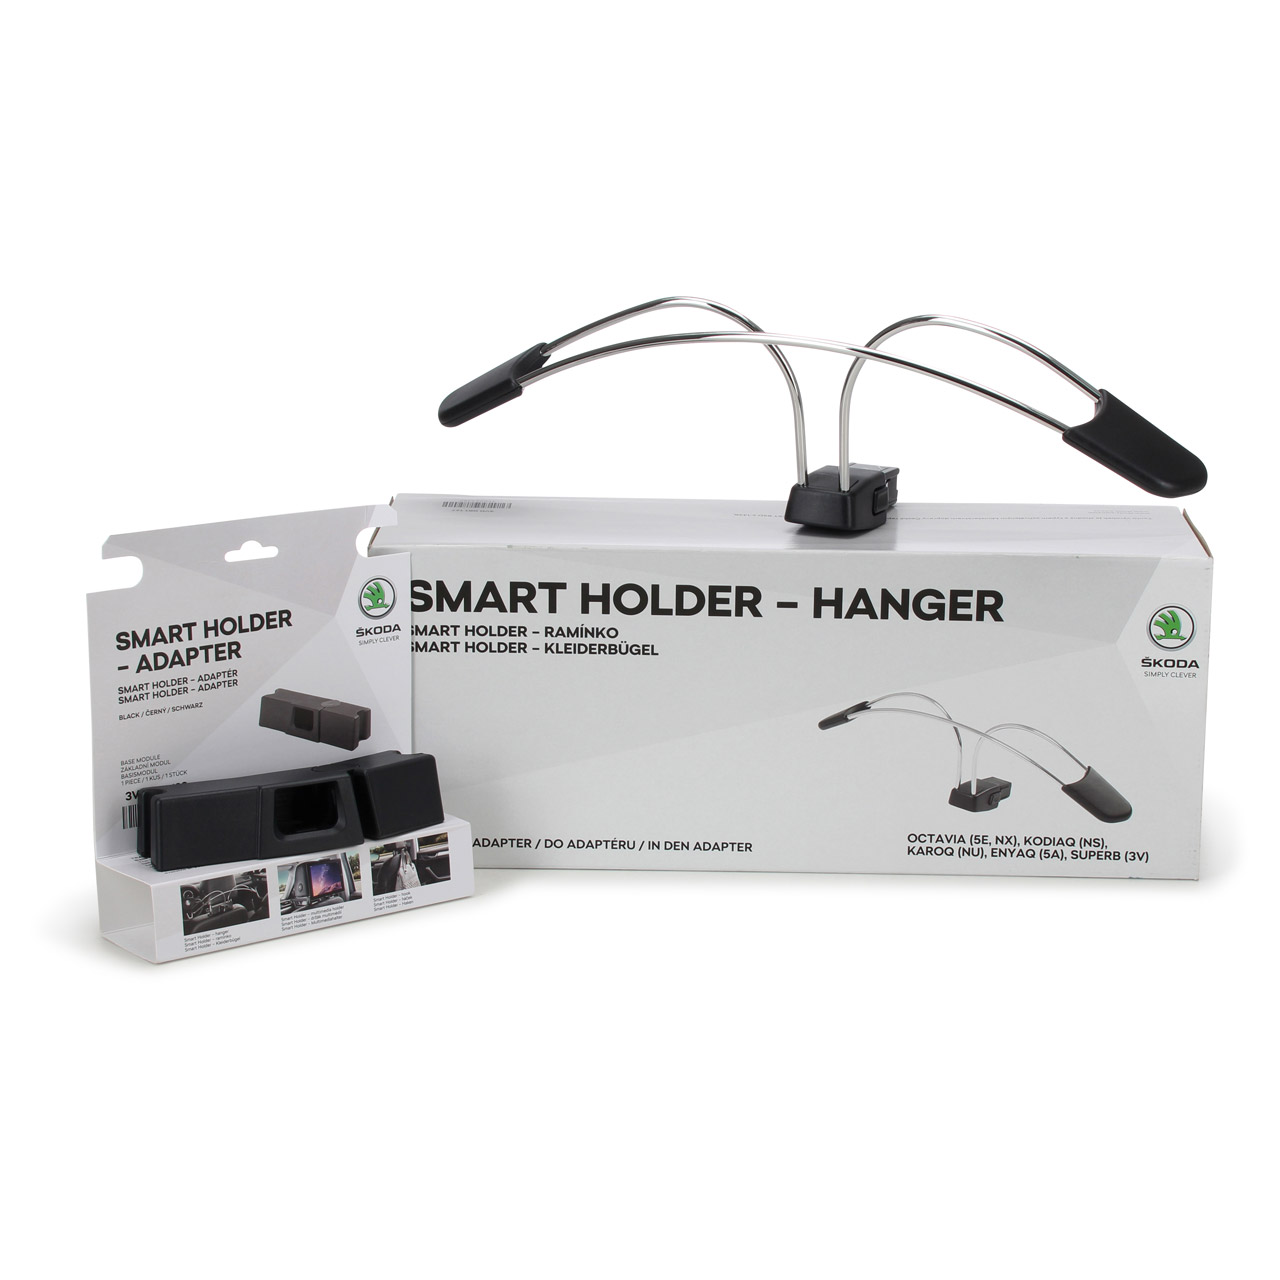 ORIGINAL Skoda Smart Holder-Hanger Kleiderbügel für die Kopfstütze + Adapter